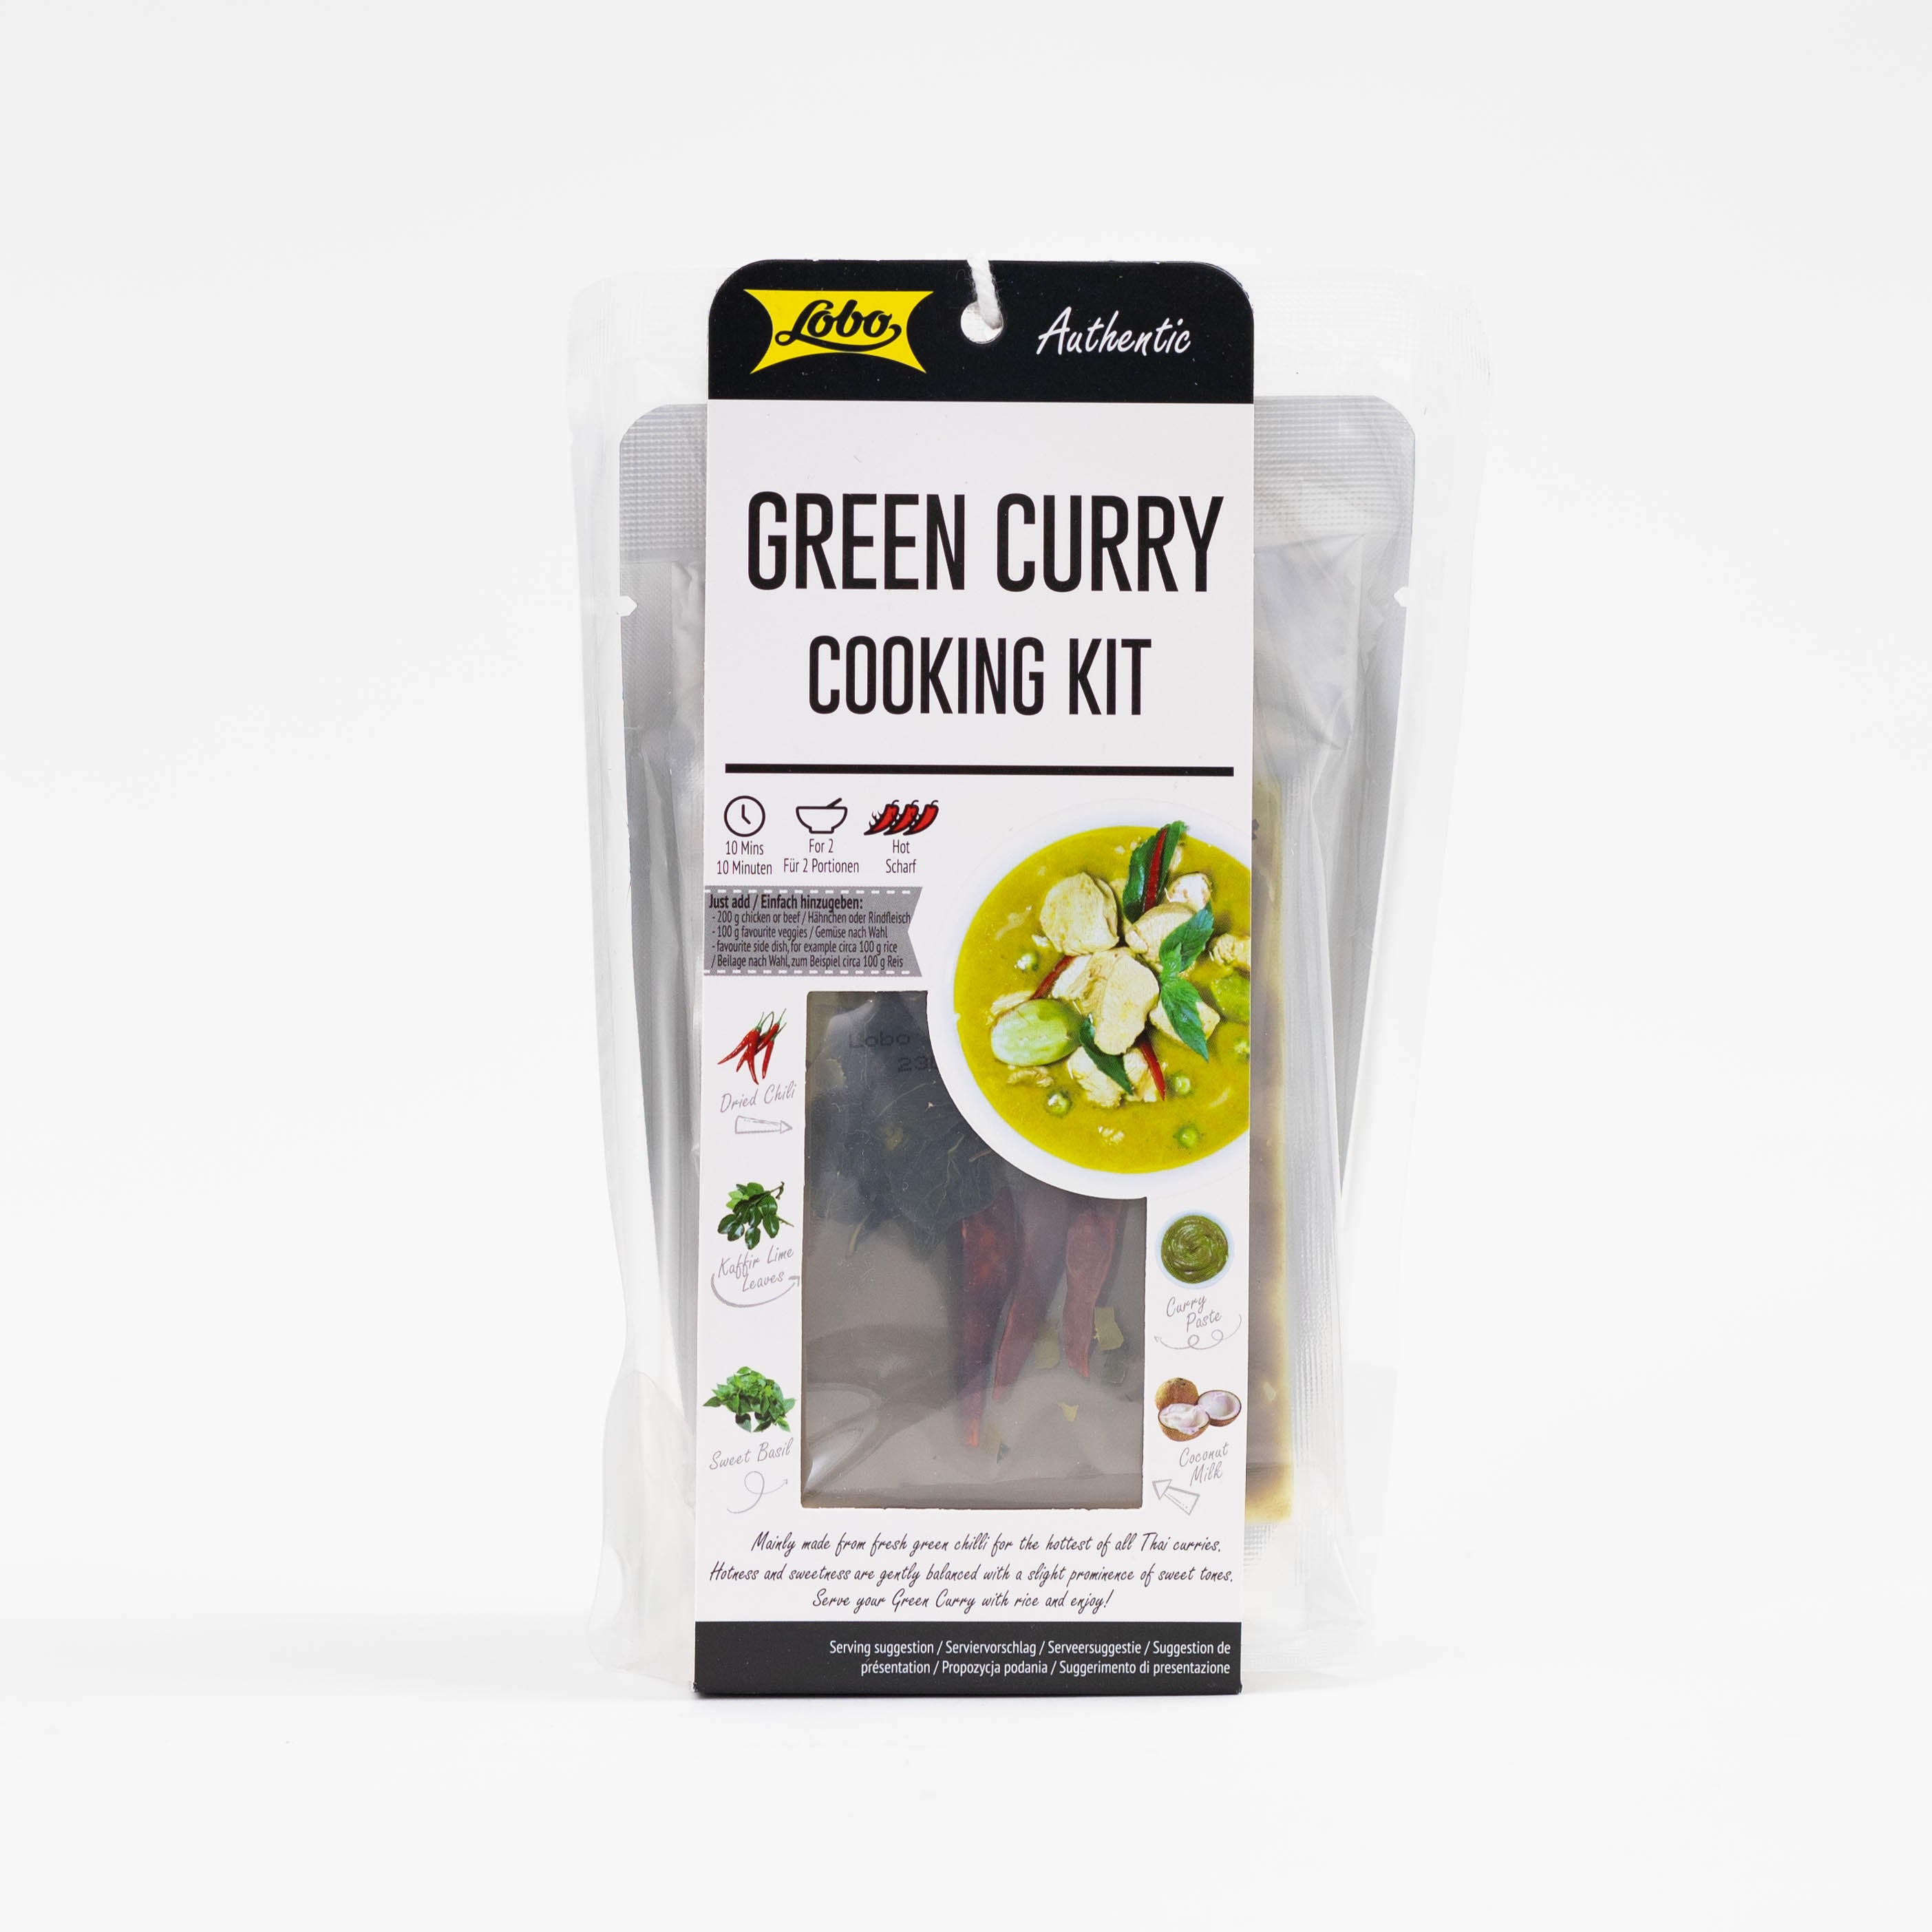 onlineshop dinese.de green curry cooking kit kochset grünes asiashop asiatische lebensmittel